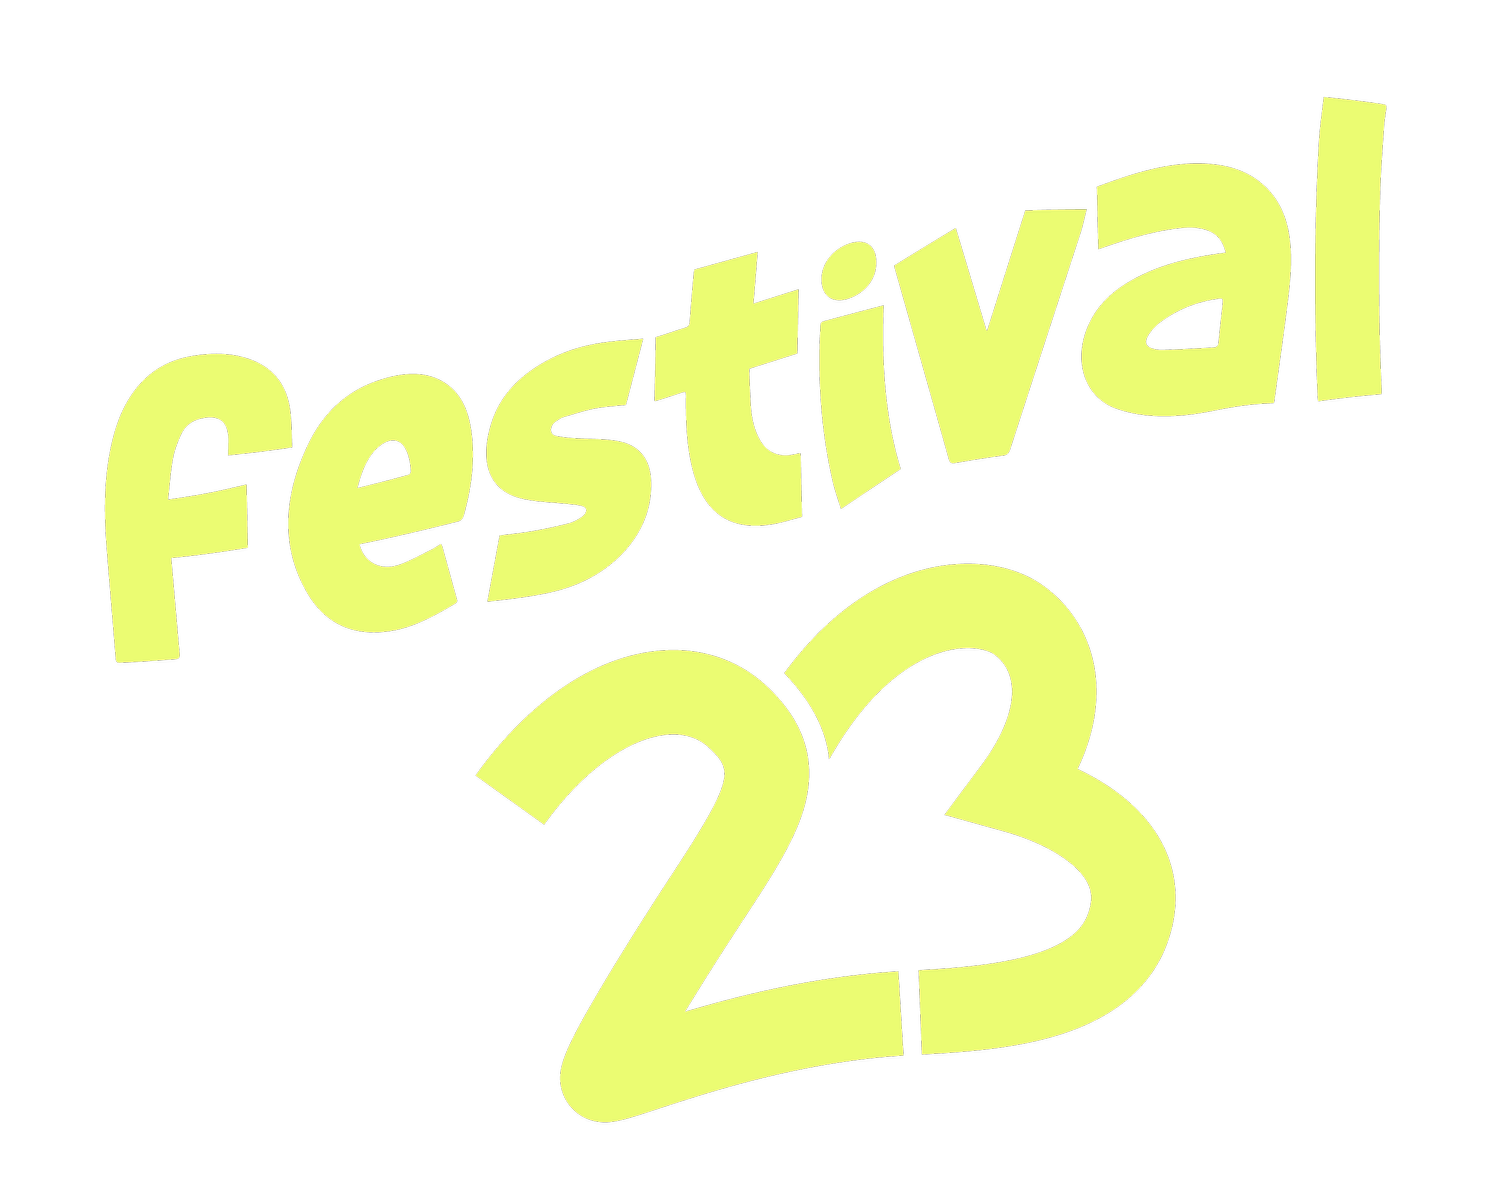 Festival23